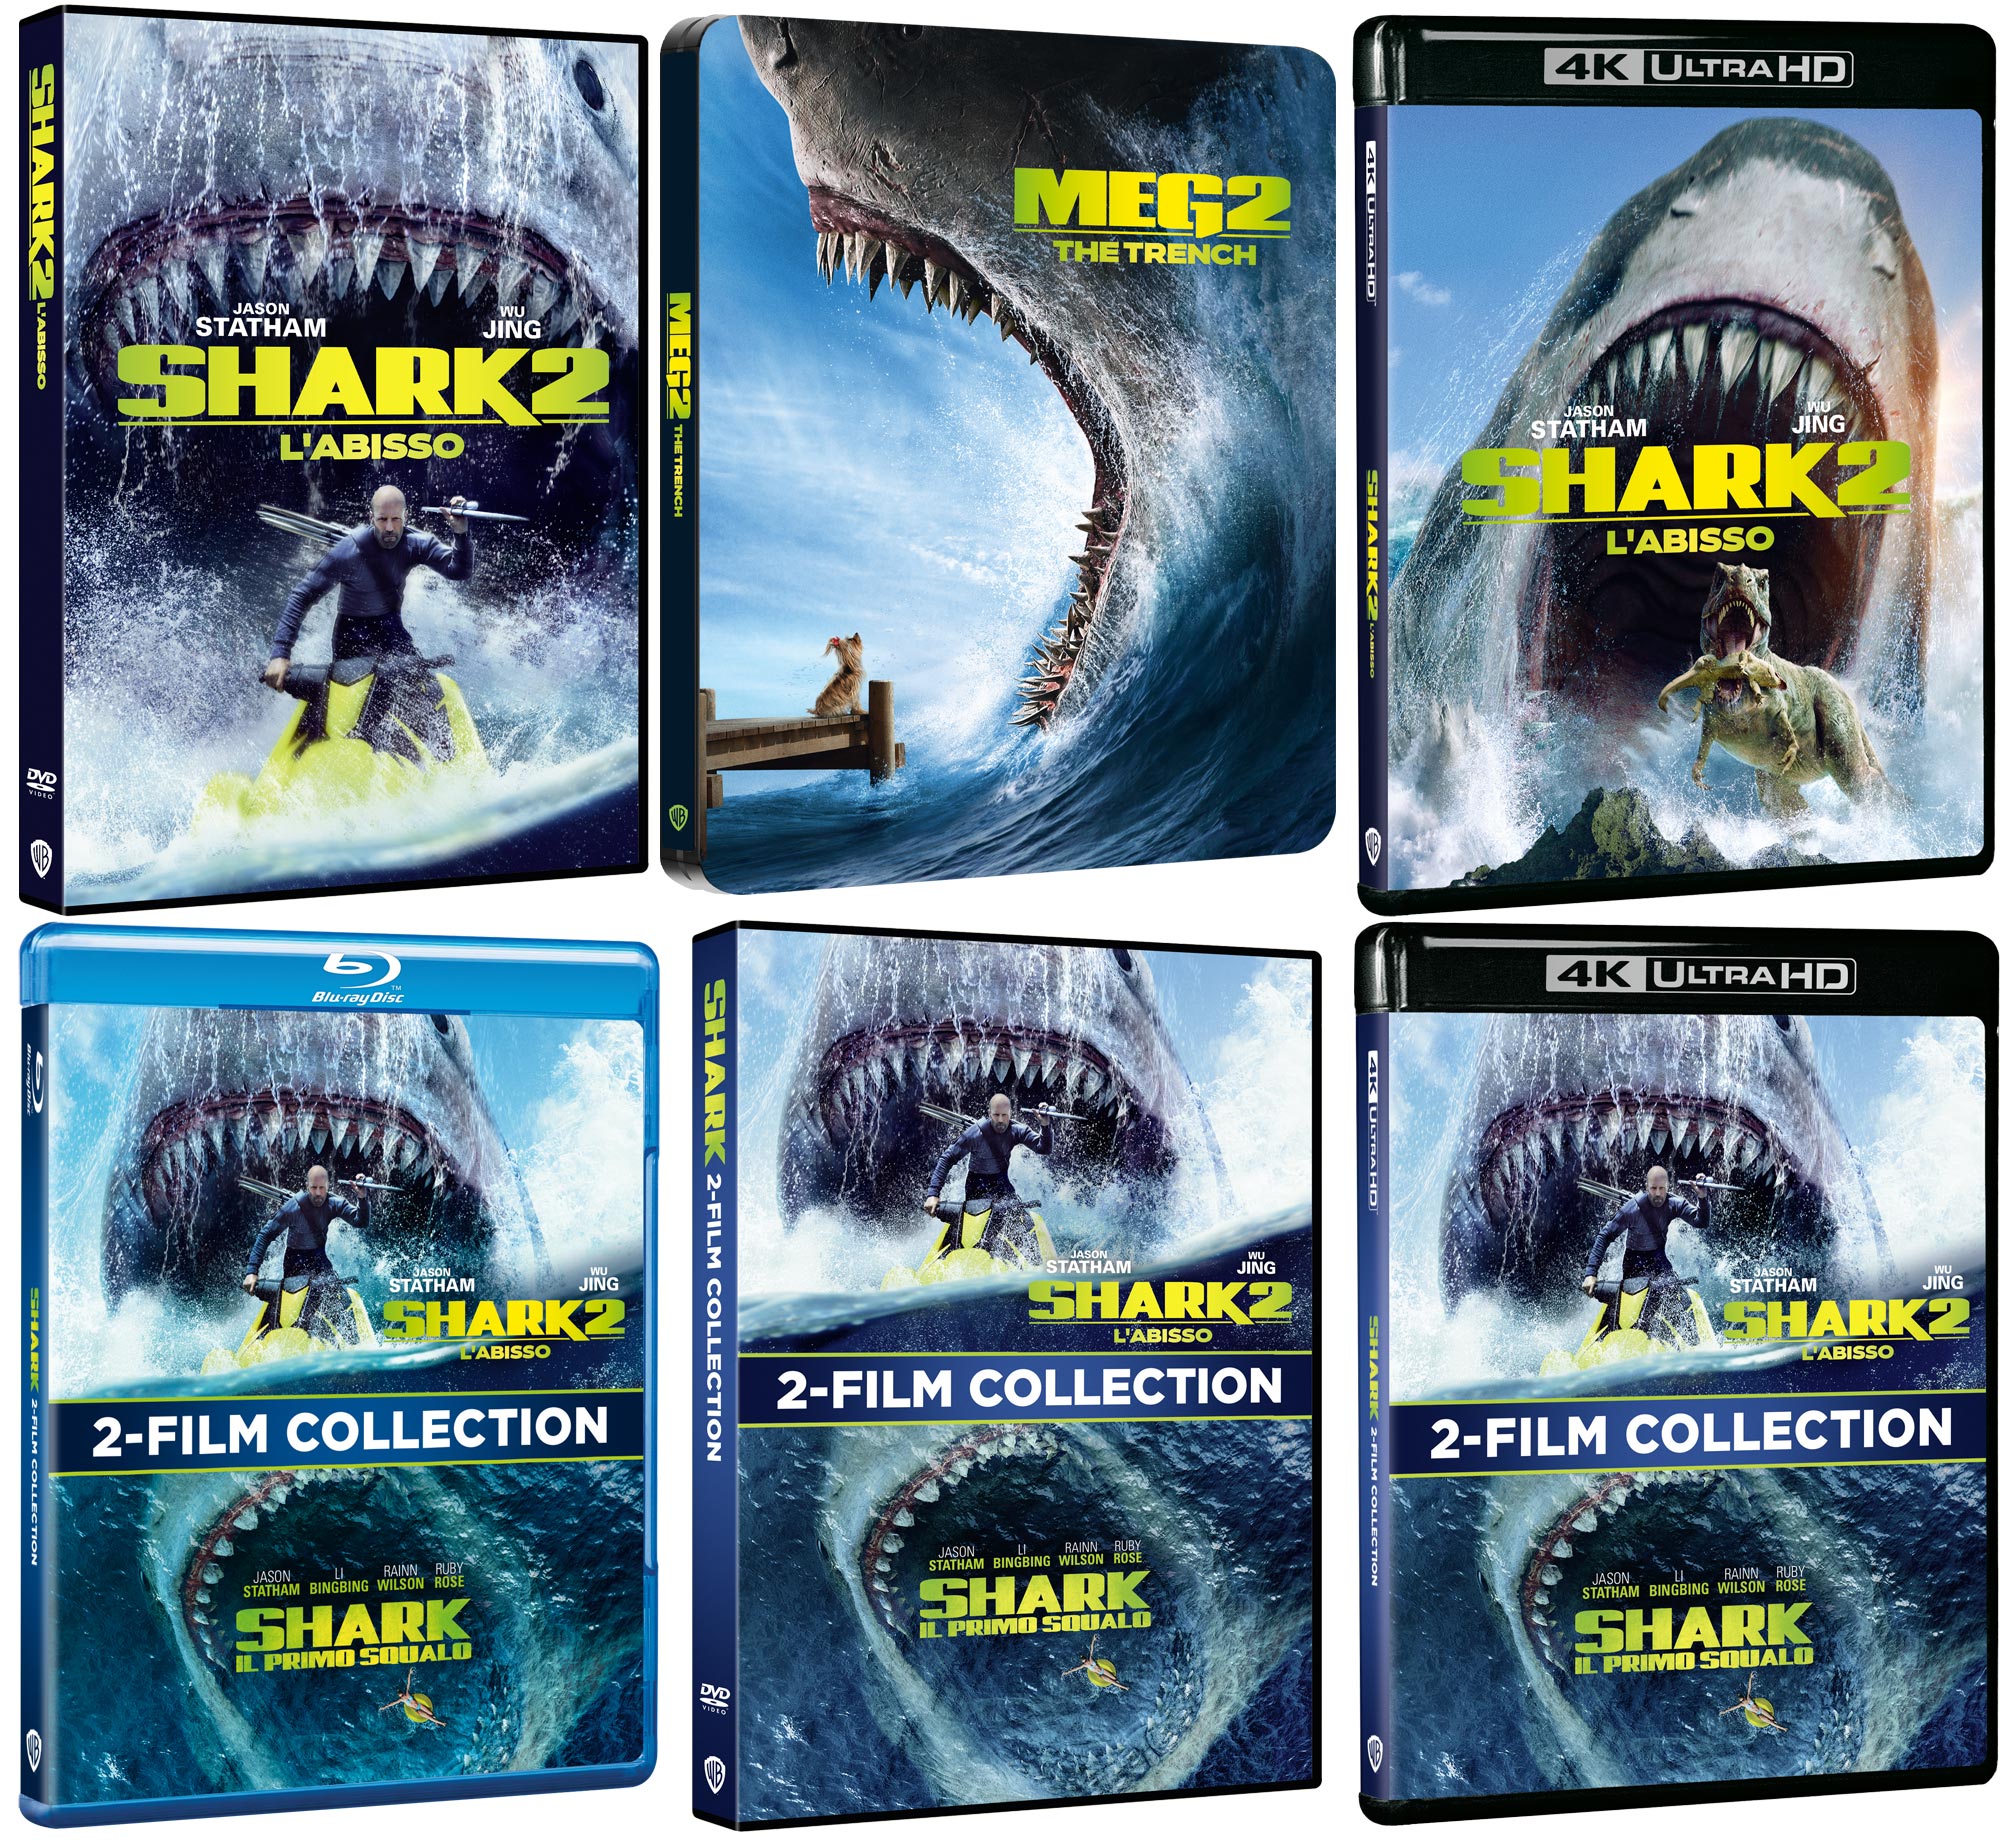 Shark 2 - L'Abisso in DVD, Blu-ray, 4K Ultra HD e Steelbook 4K Ultra HD